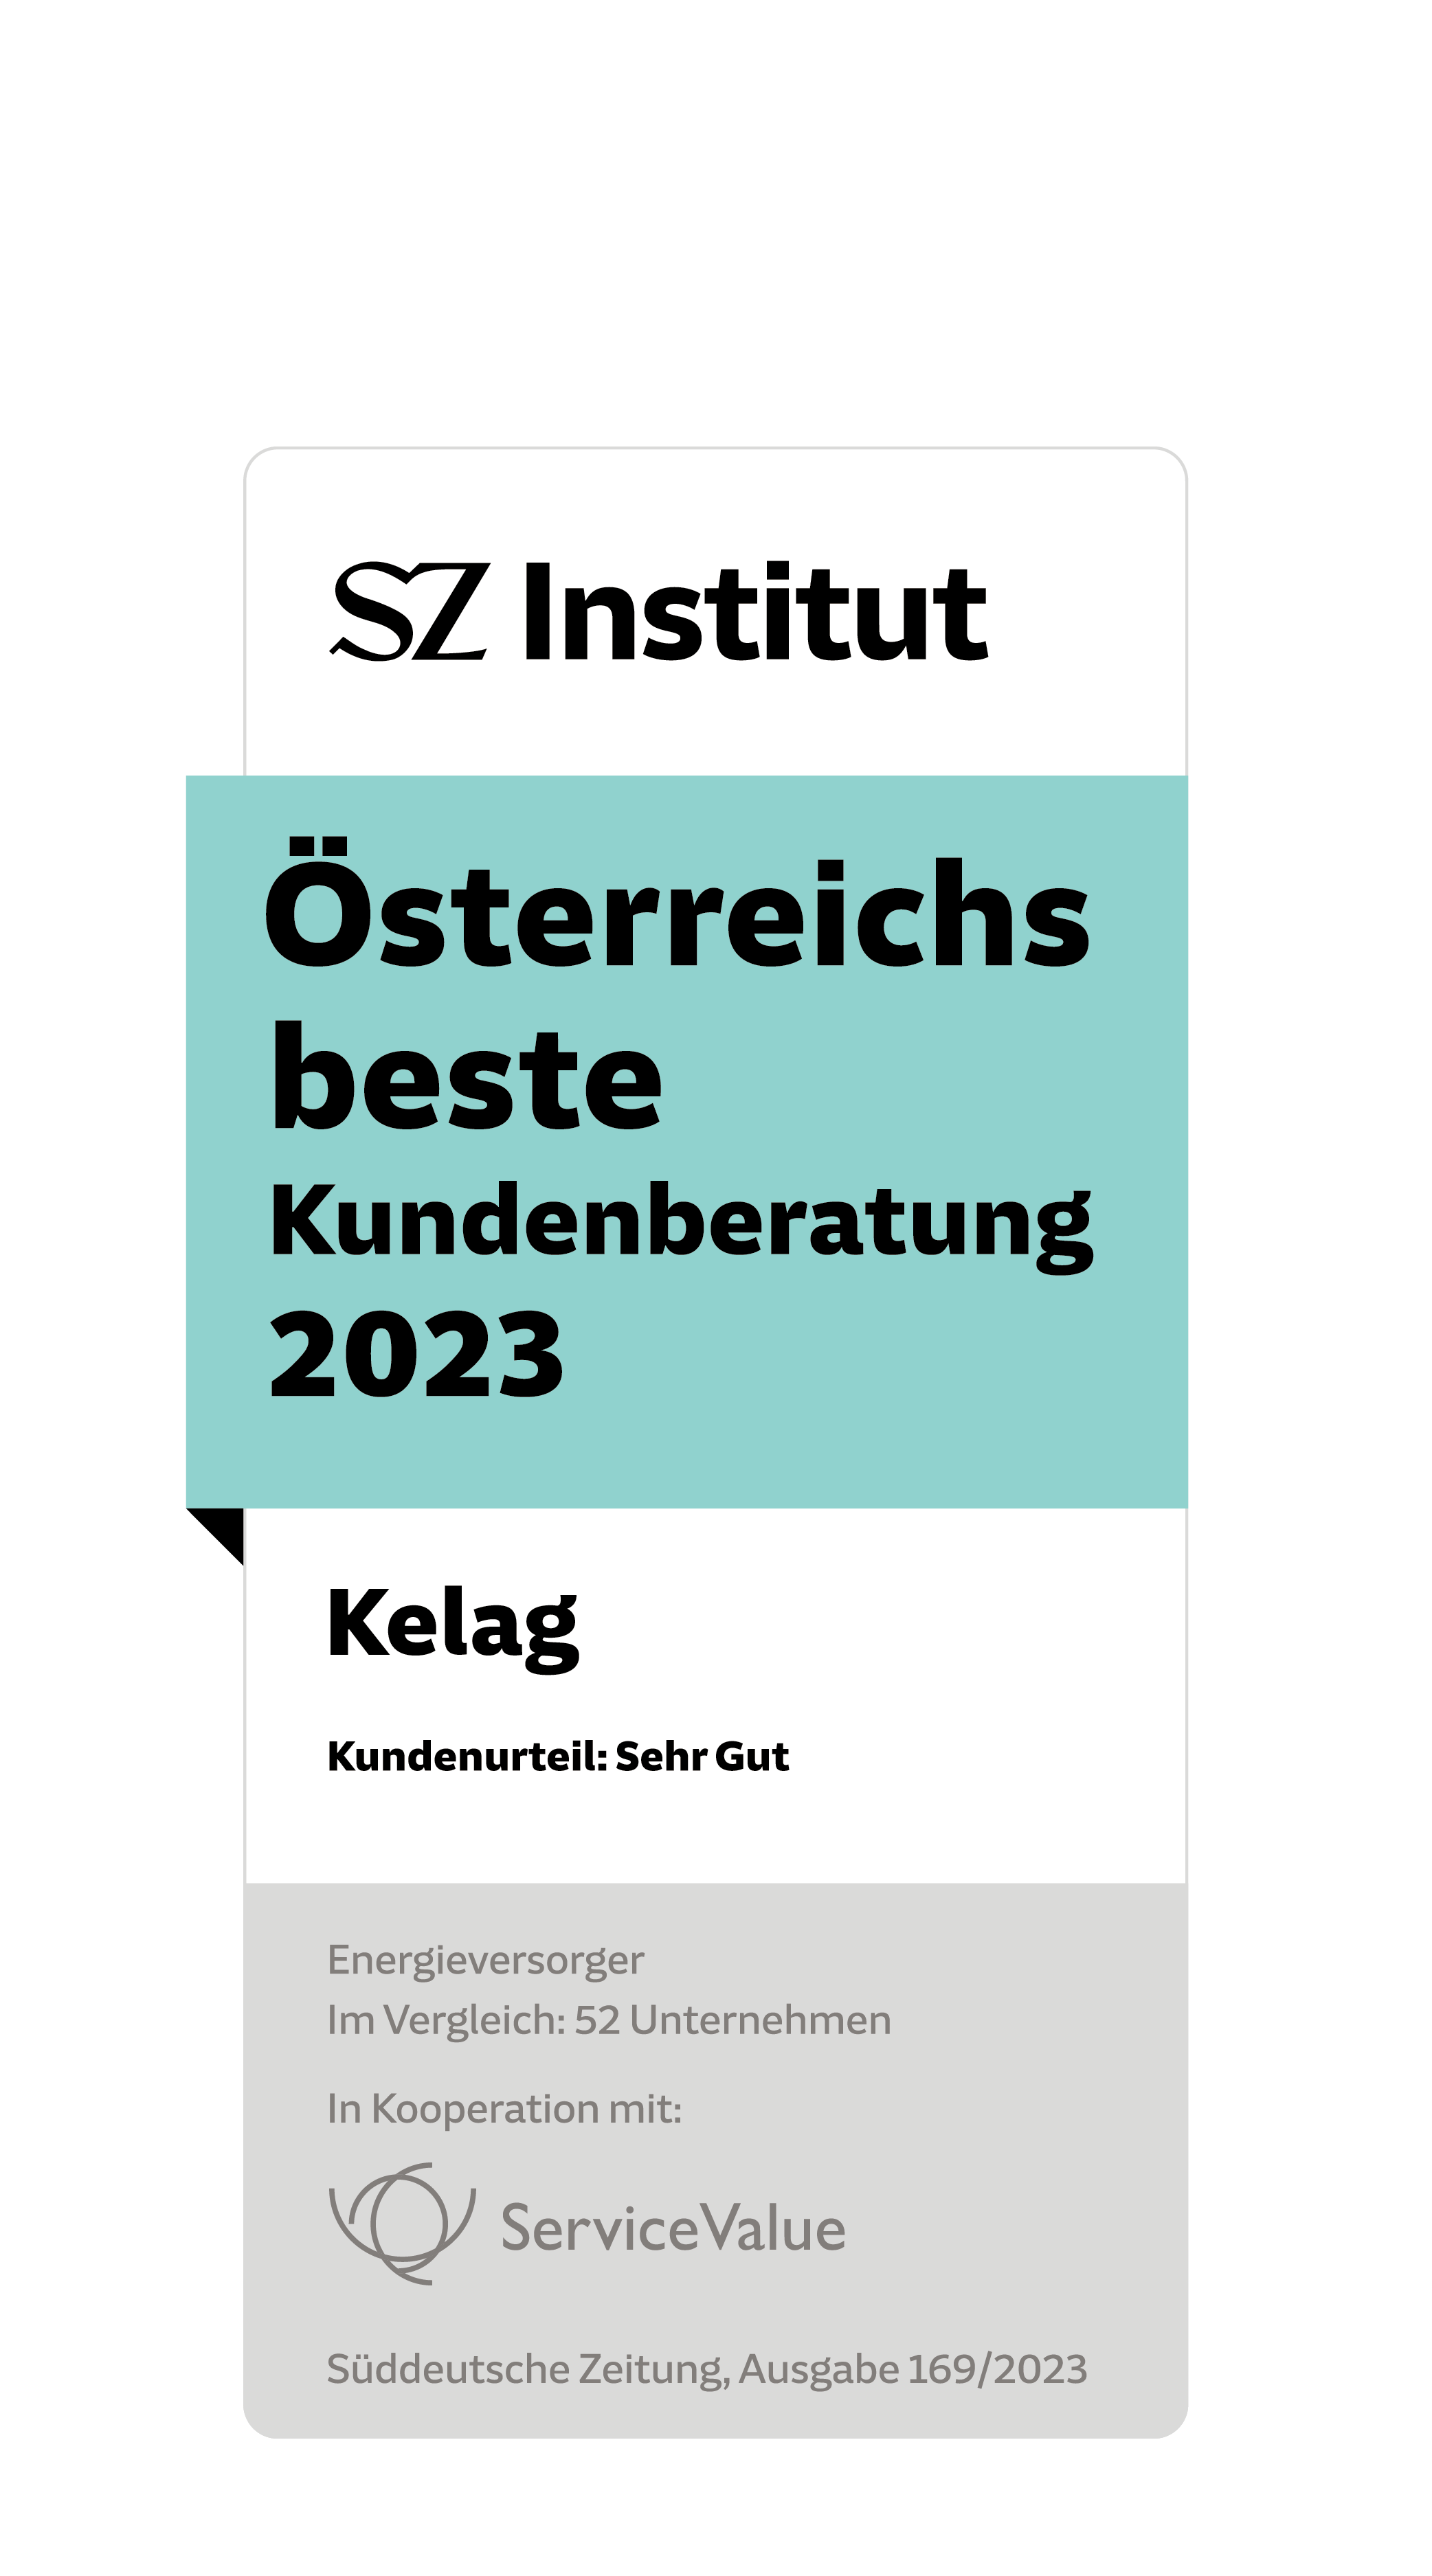 Siegel des SZ Instituts für österreichs beste Kundenberatung im Jahr 2023